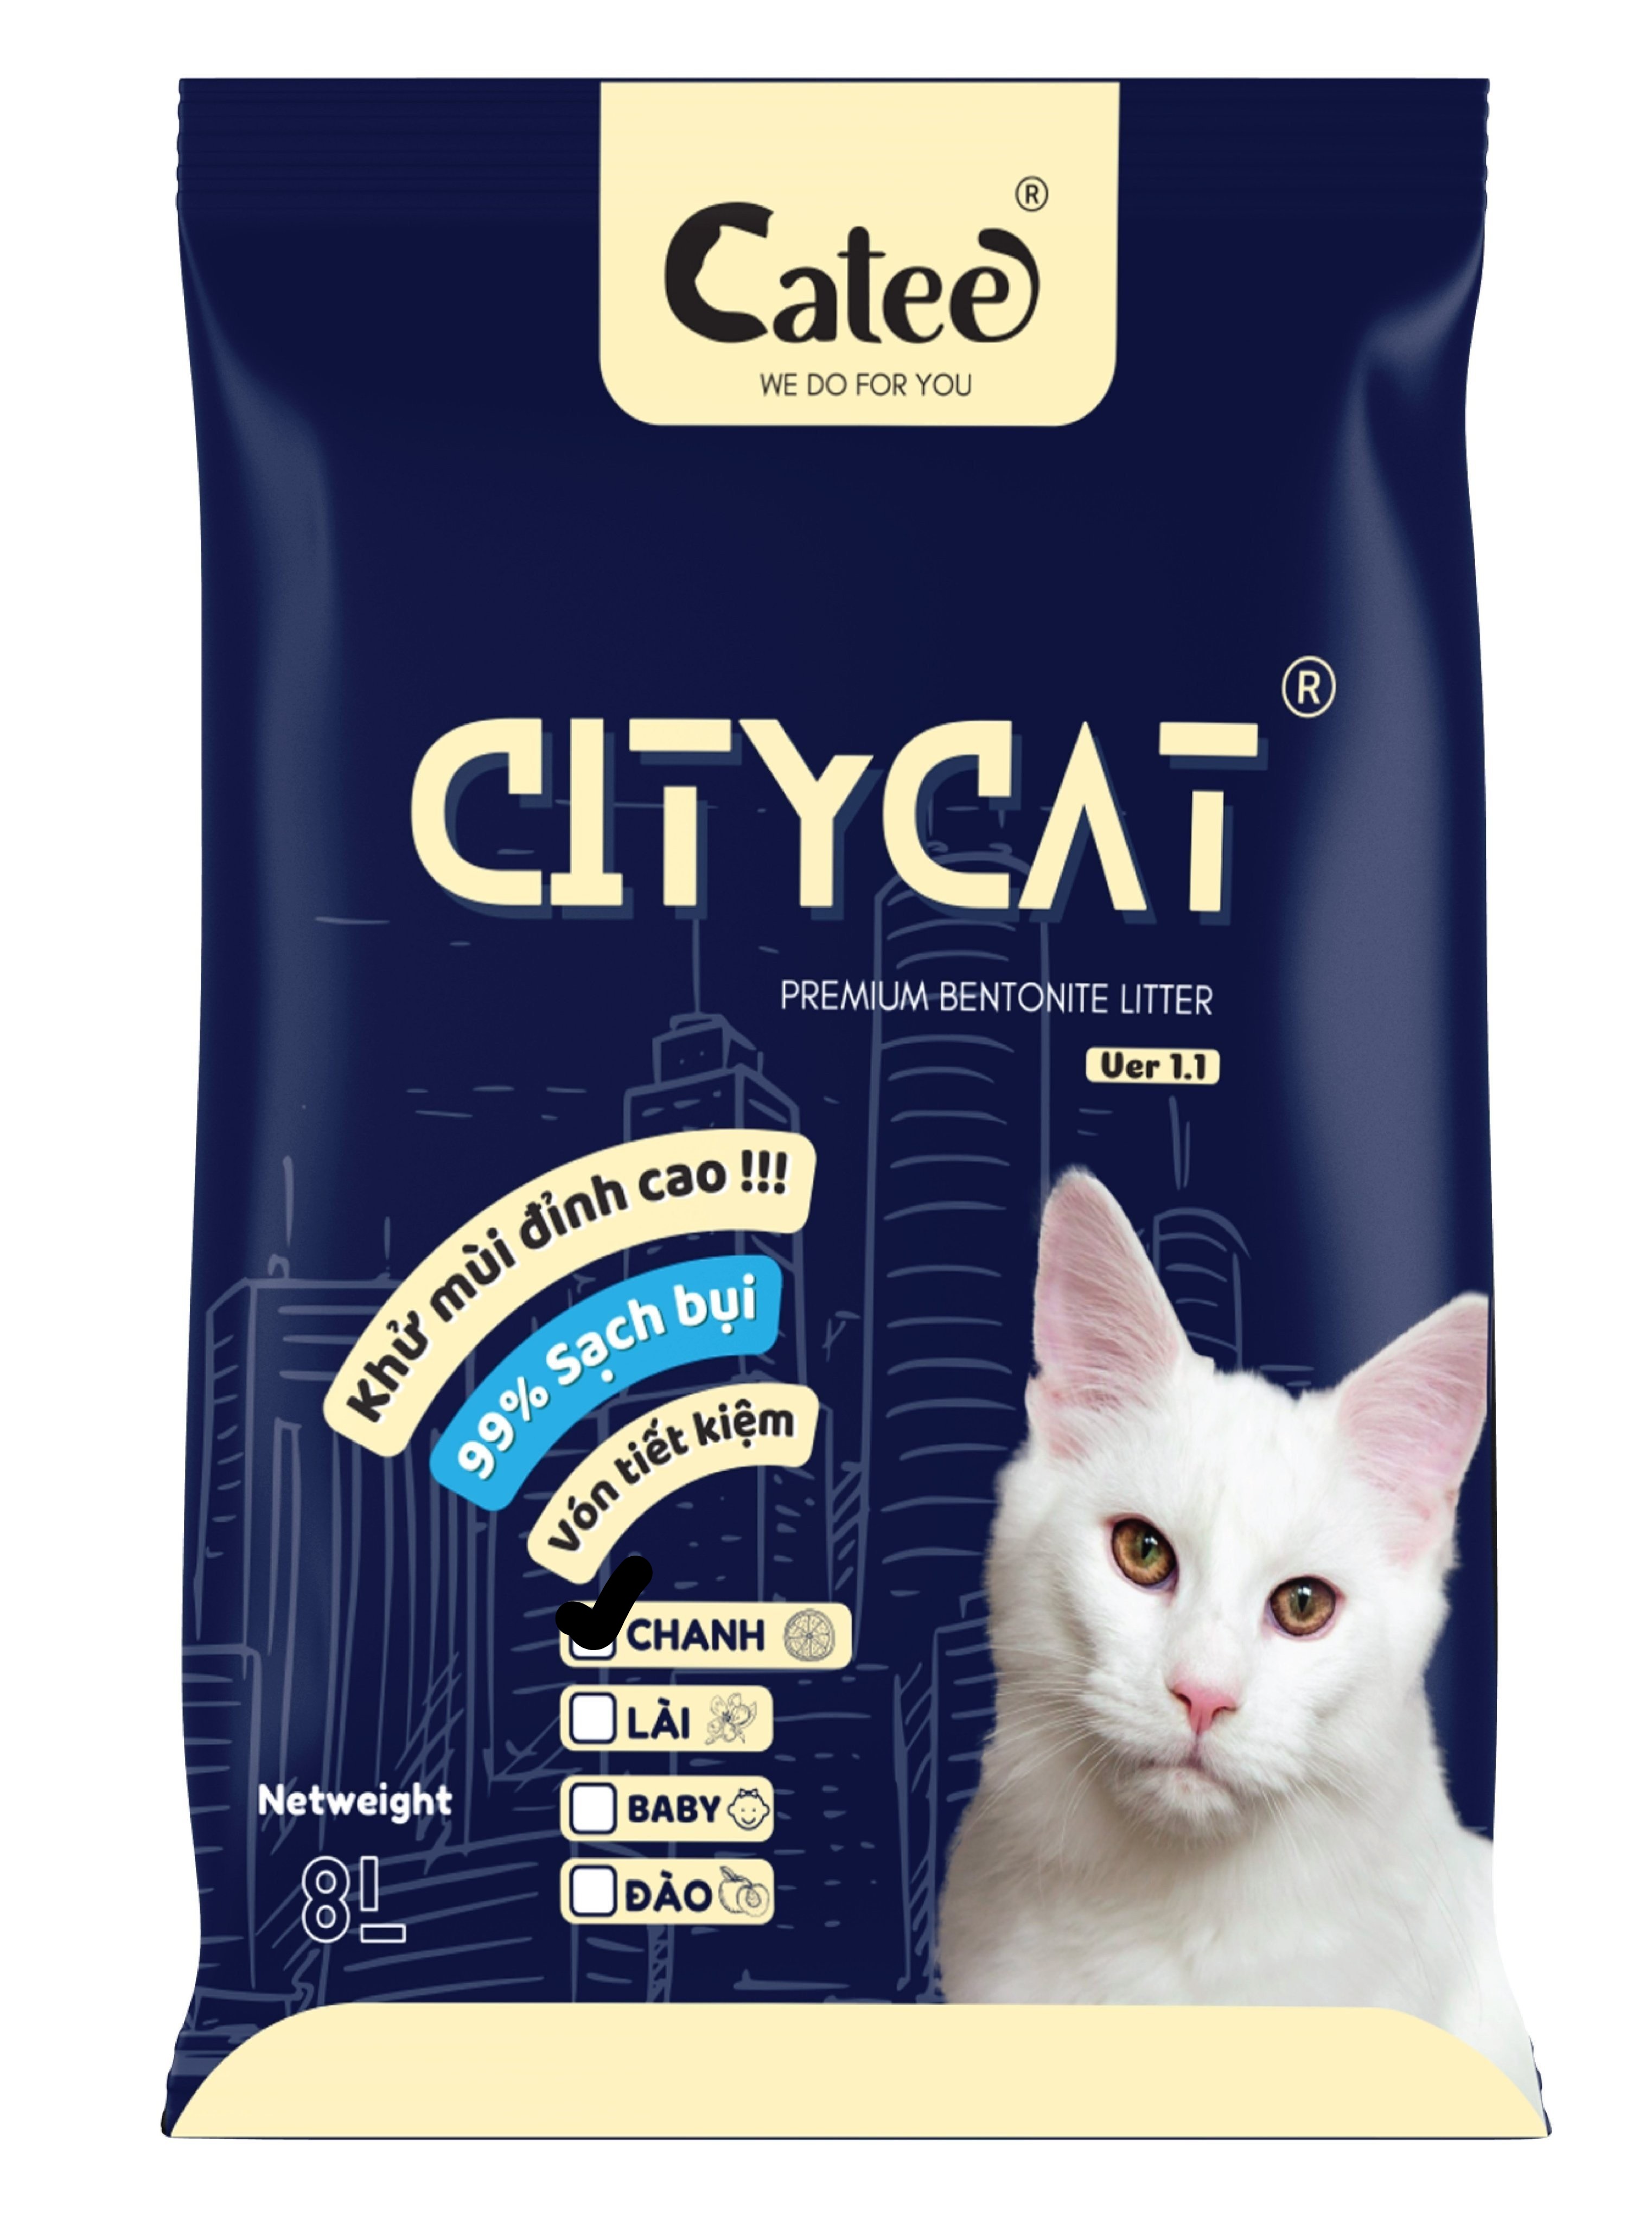 Cát Cho Mèo City Cat 8L (4KG) Đủ Mùi, Siêu Thơm, Siêu Vón Cục